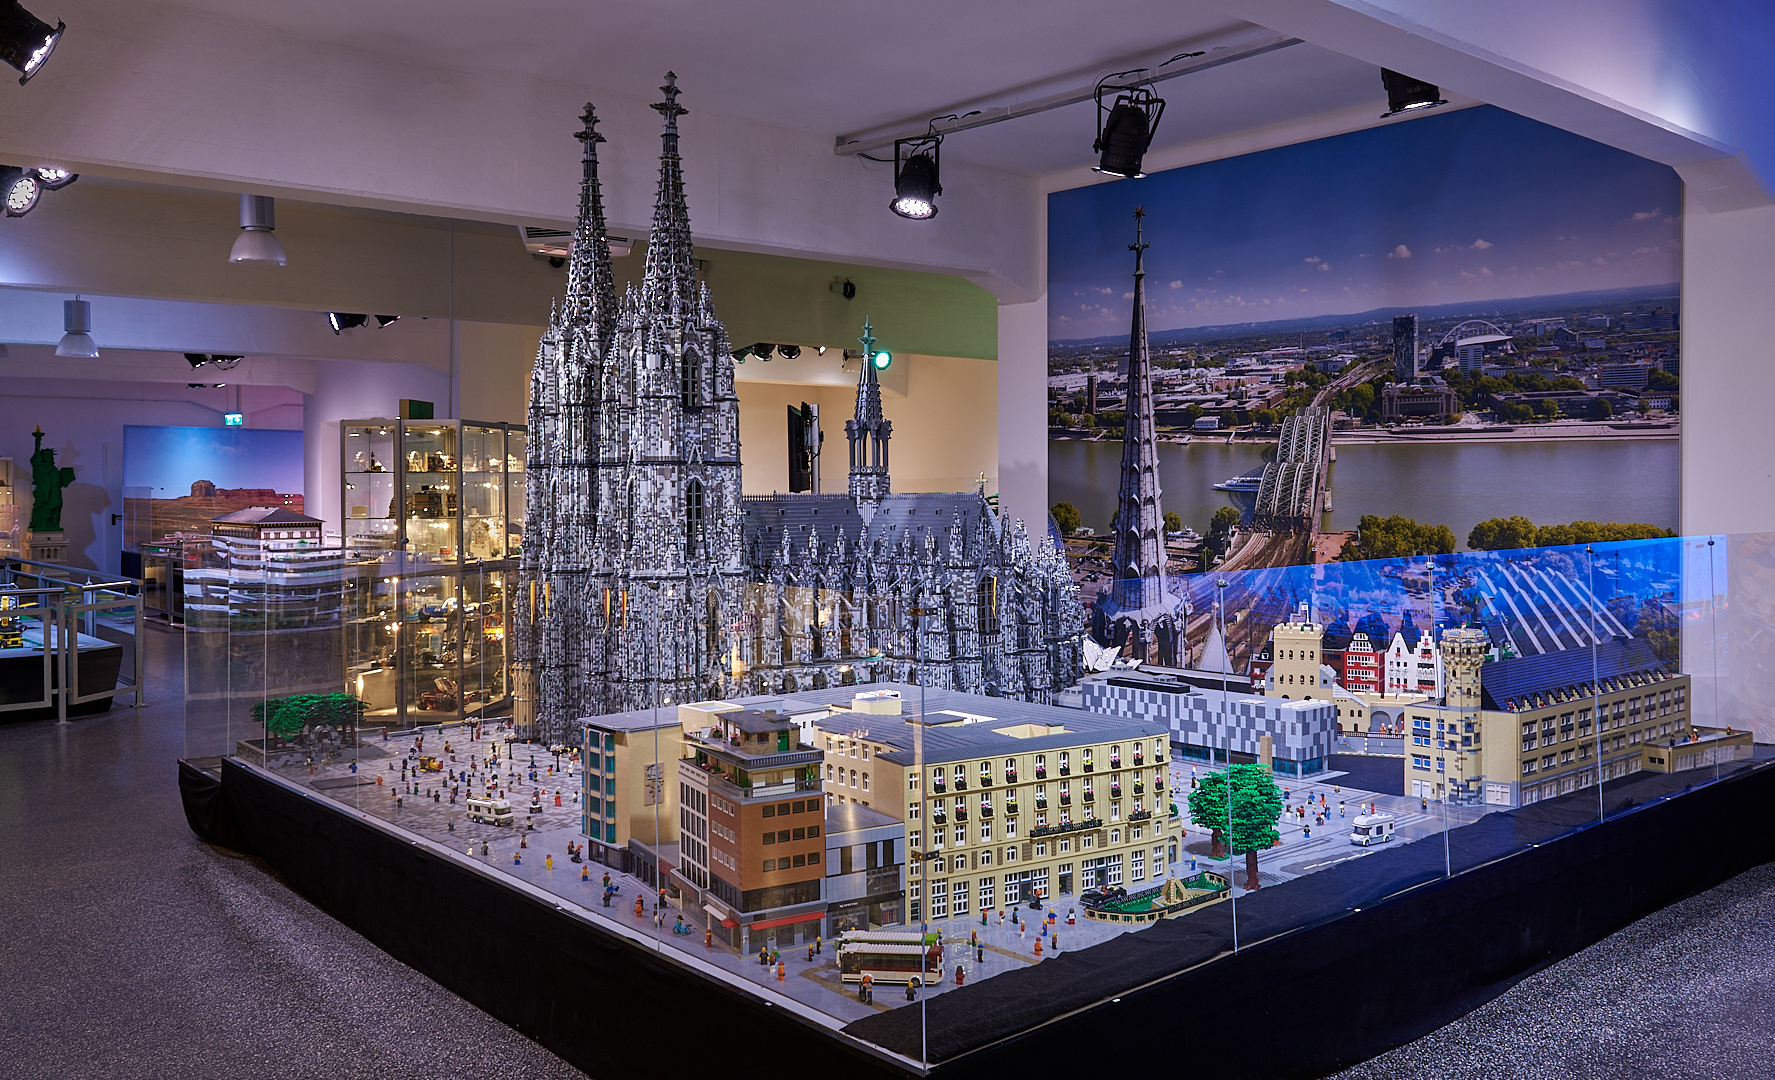 Komme gerade aus Köln.. :-)). Fast 1 000 000 Legosteine wurden verbaut. Kölner Dom mit Vorplatz...